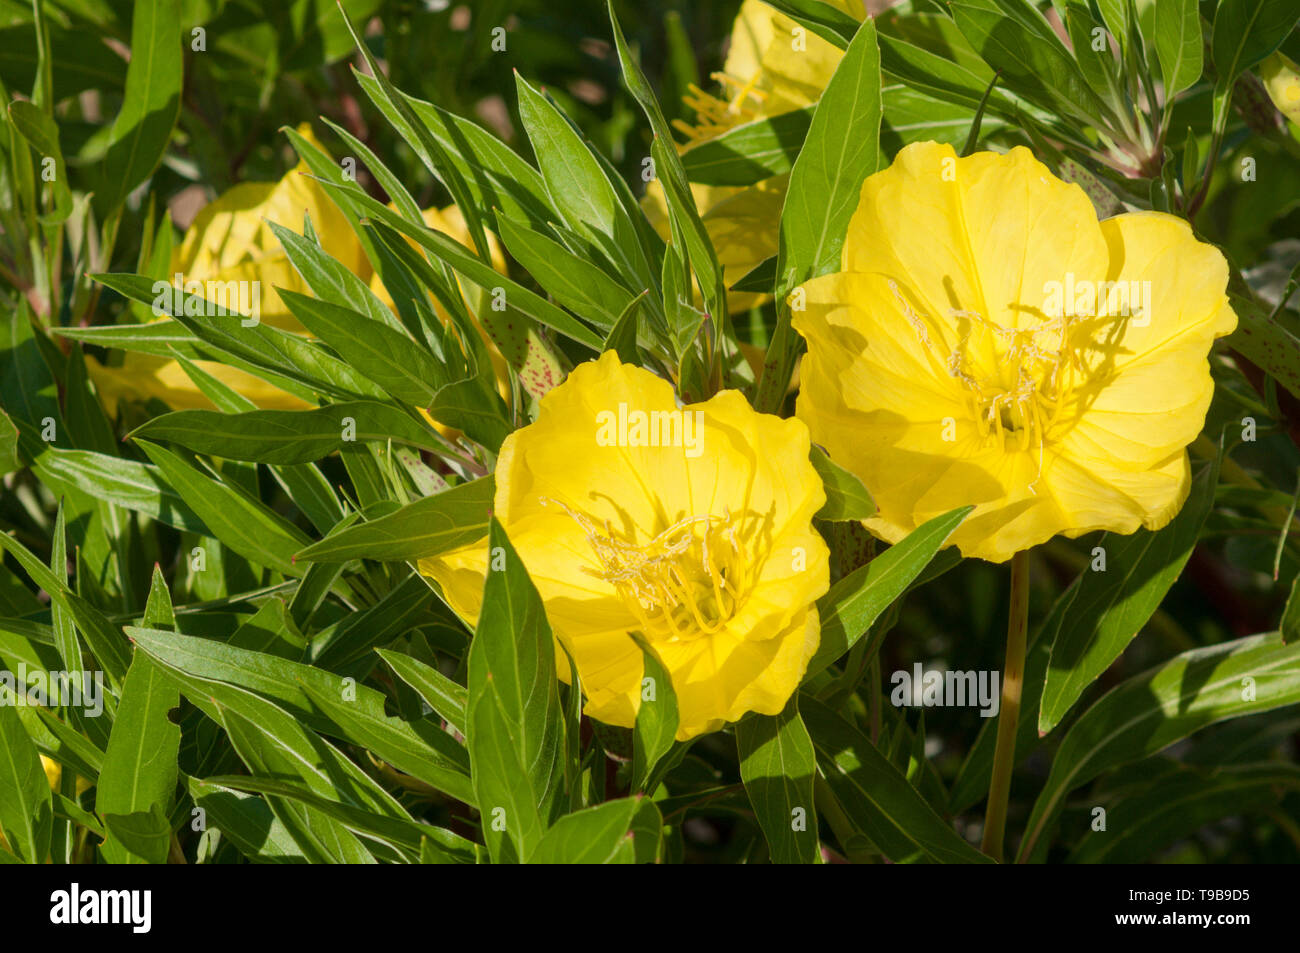 Evening primrose, Oenothera biennis Stock Photo